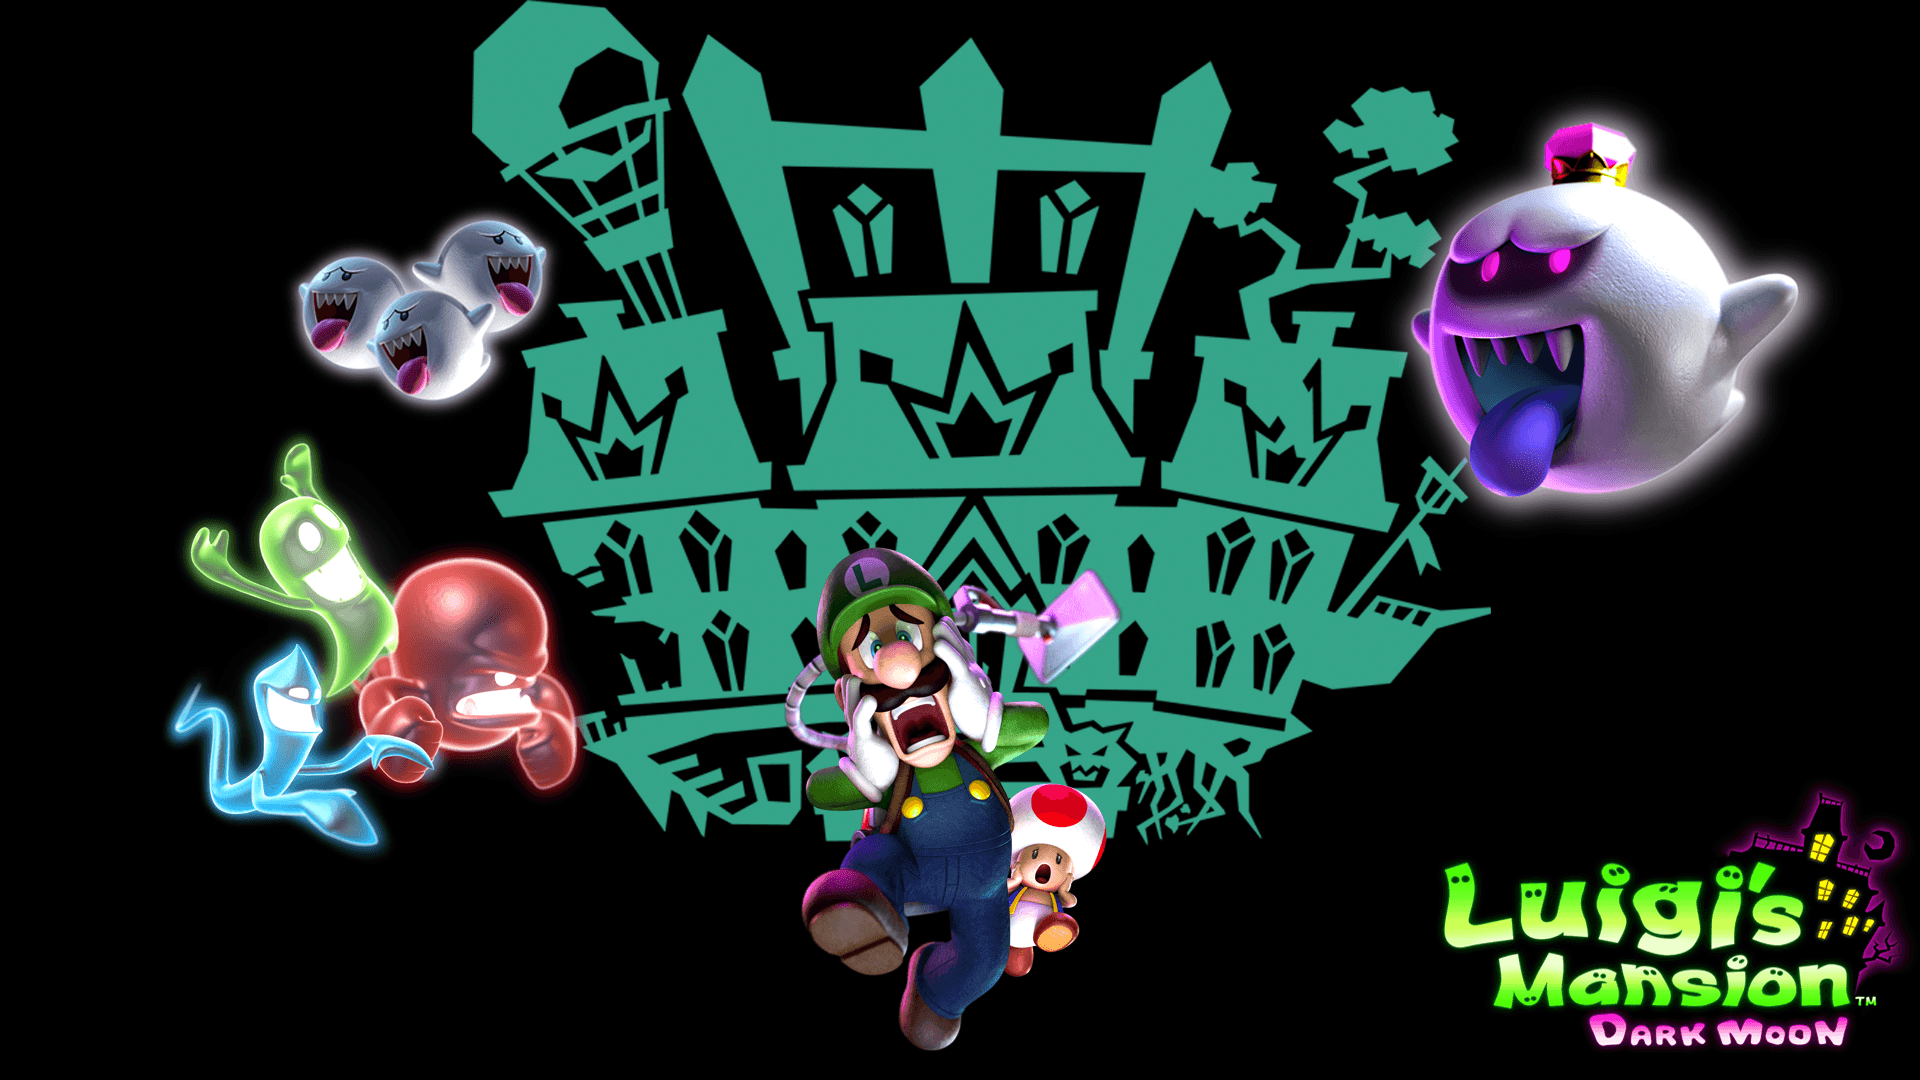 Luigi's Mansion: Dark Moon HD Wallpaper. Background Image